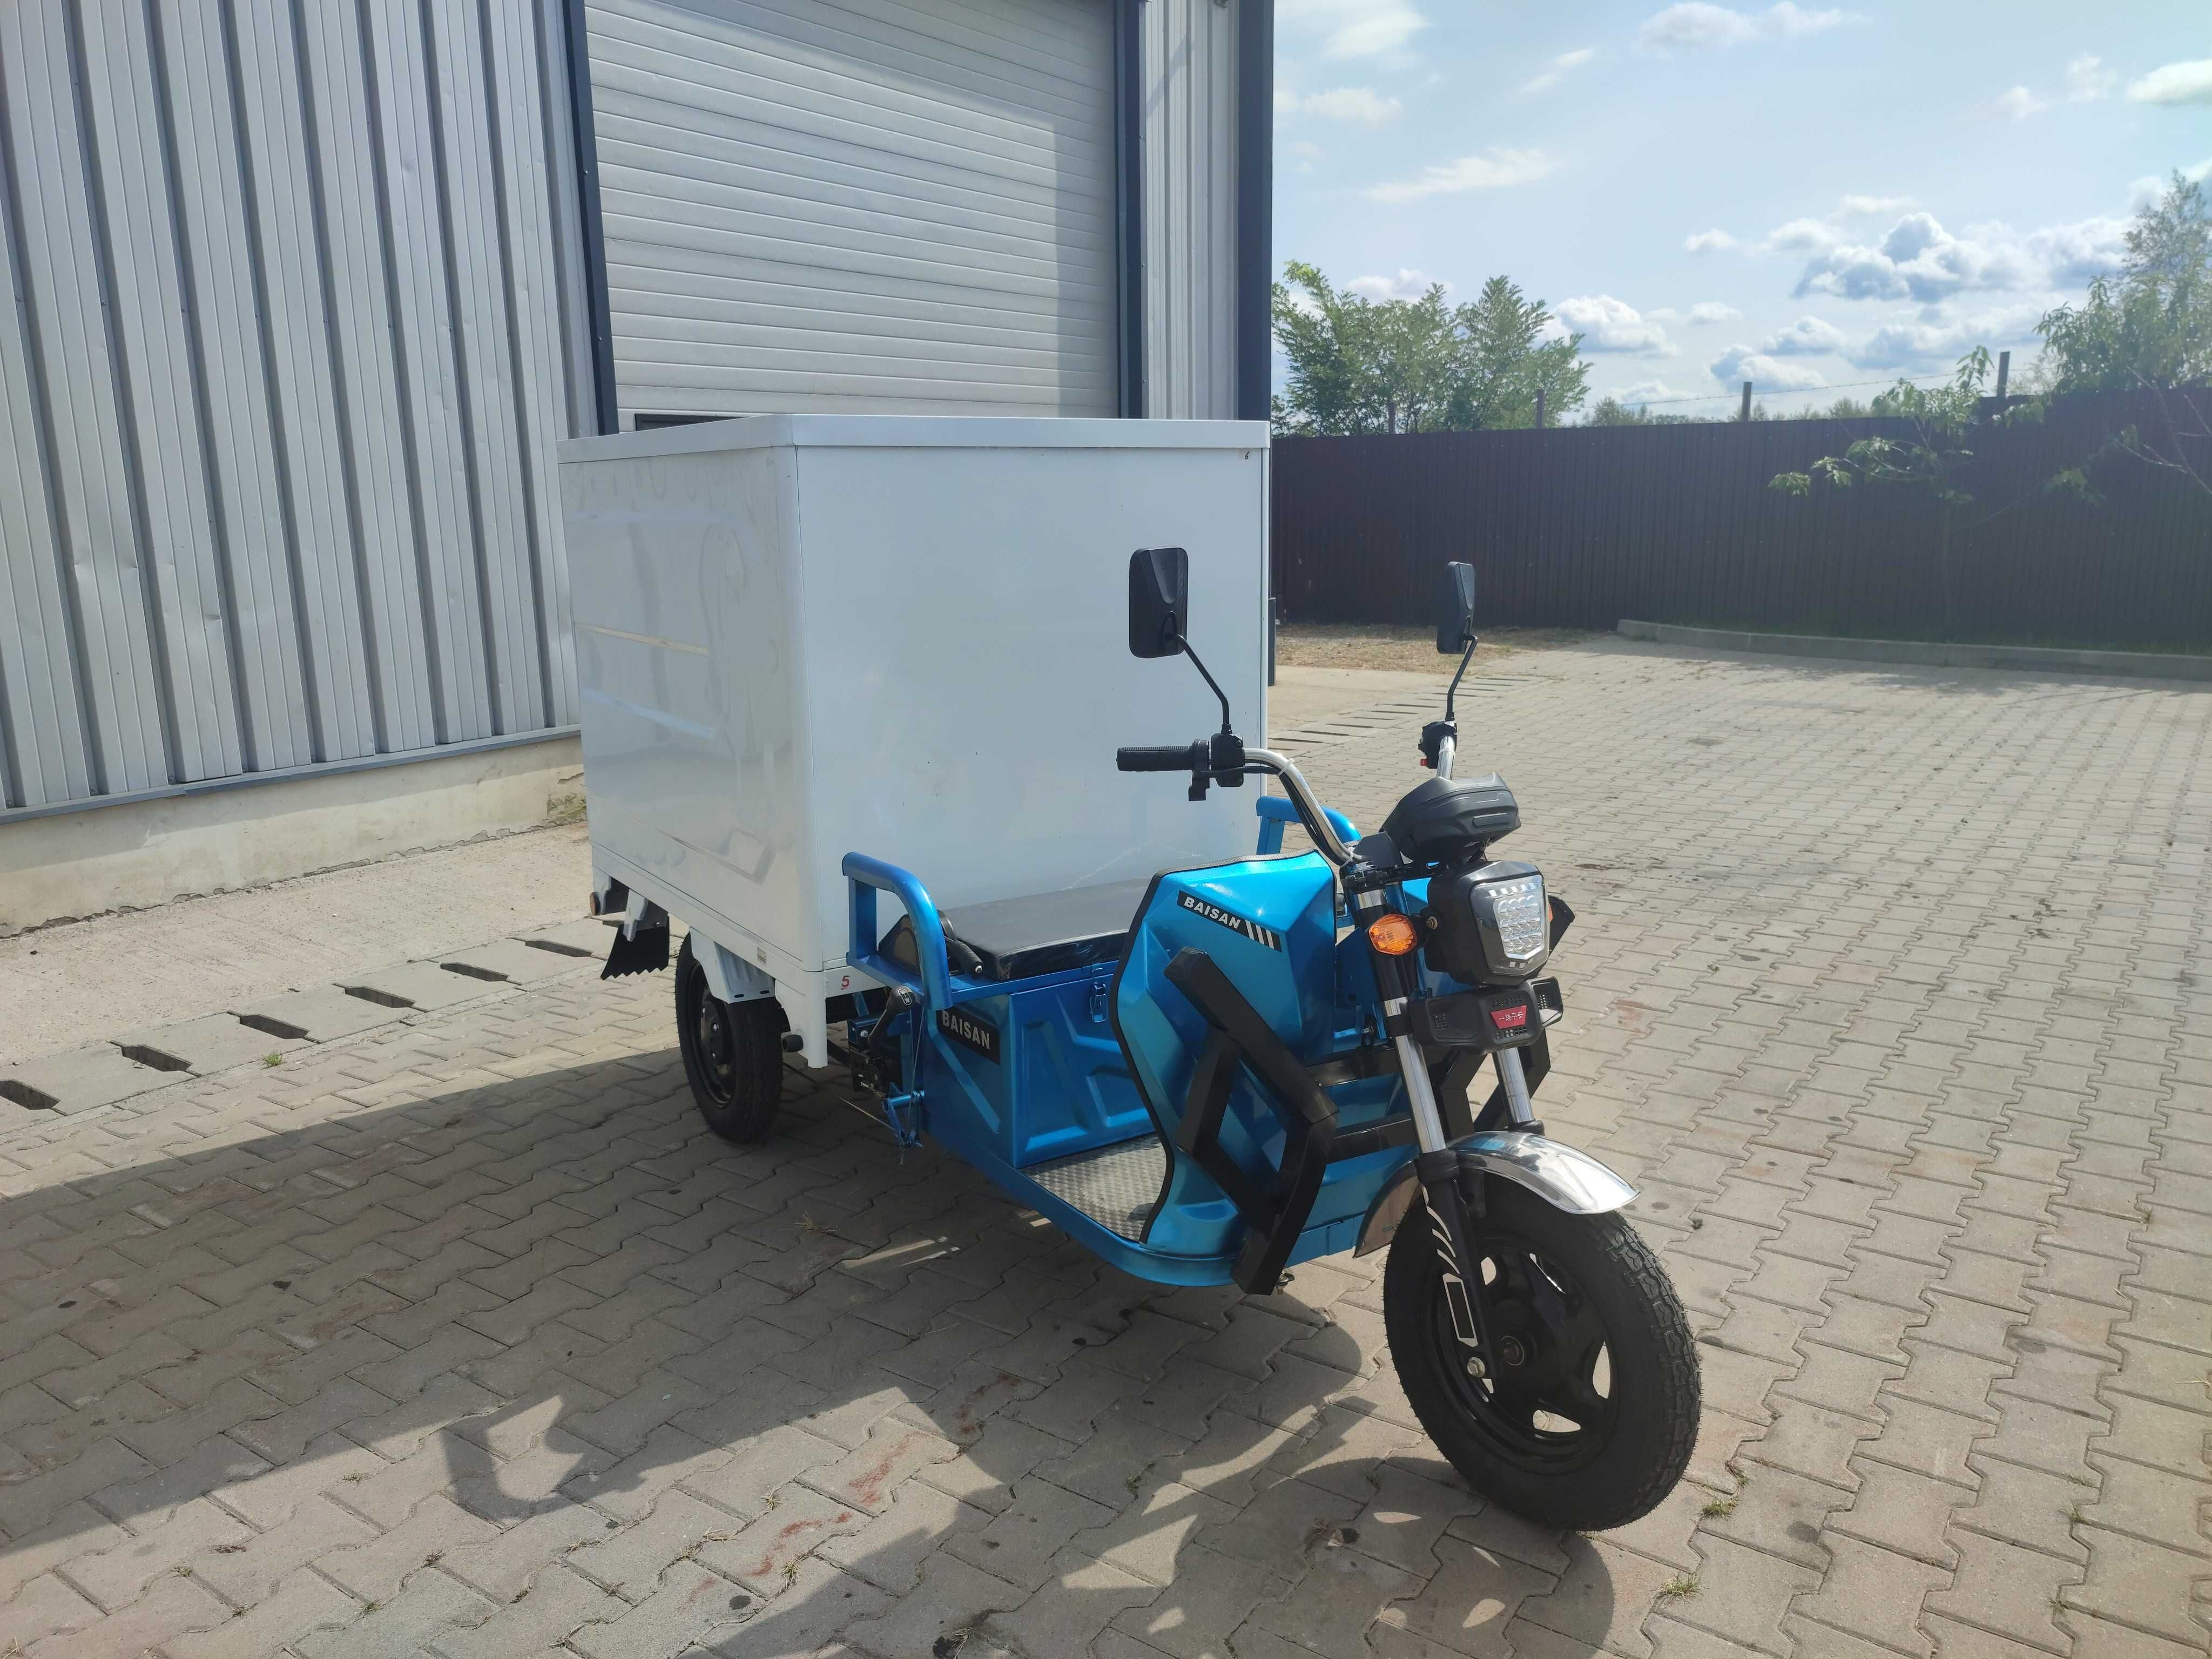 Tricicleta noua marca Baisan Cargo Cabina Agramix